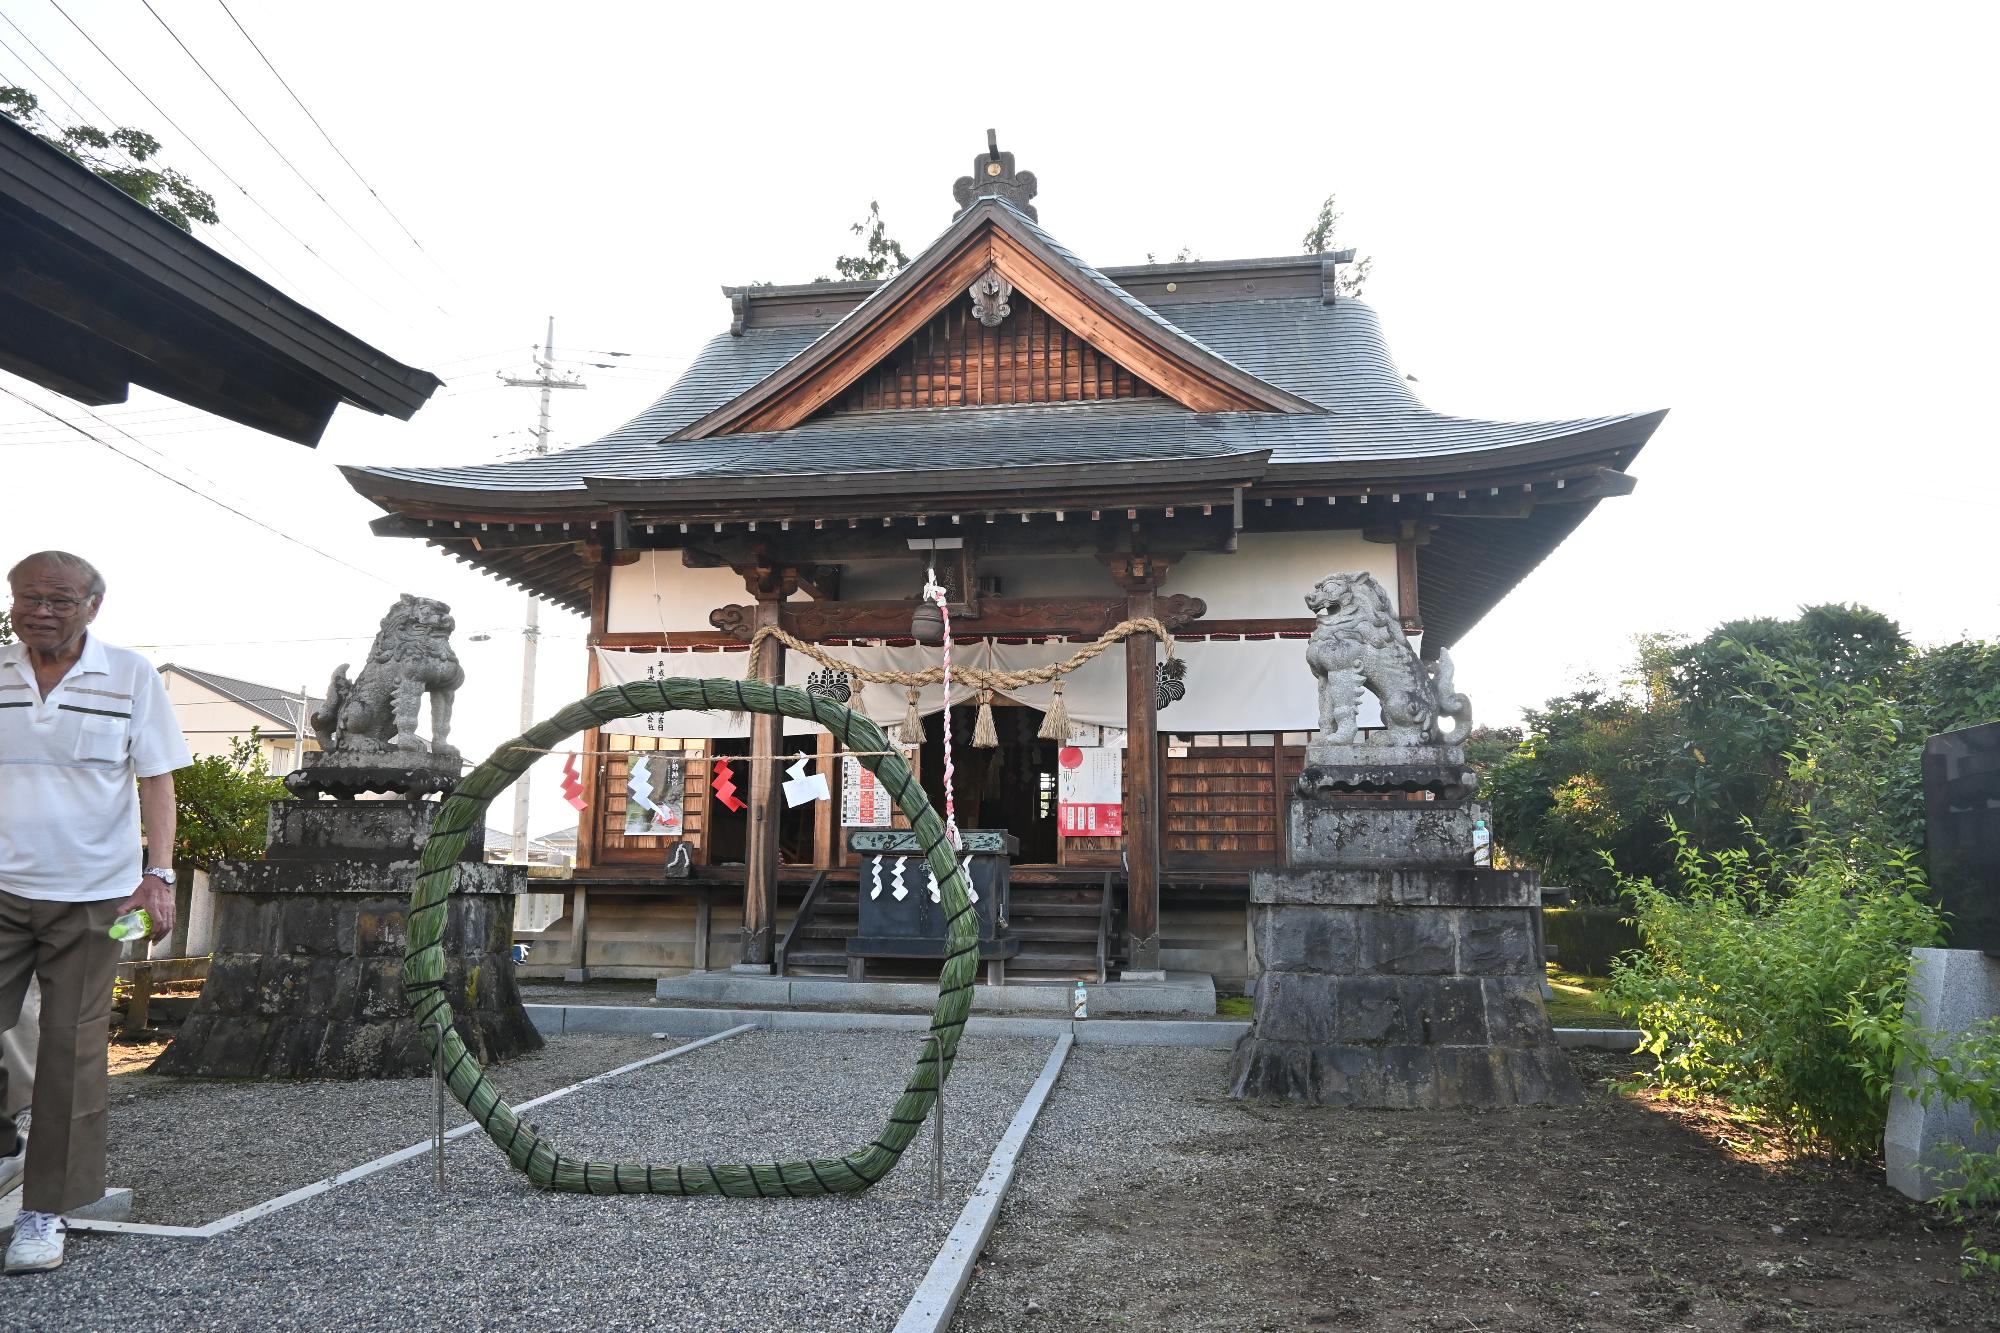 松尾神社禊払い祭典